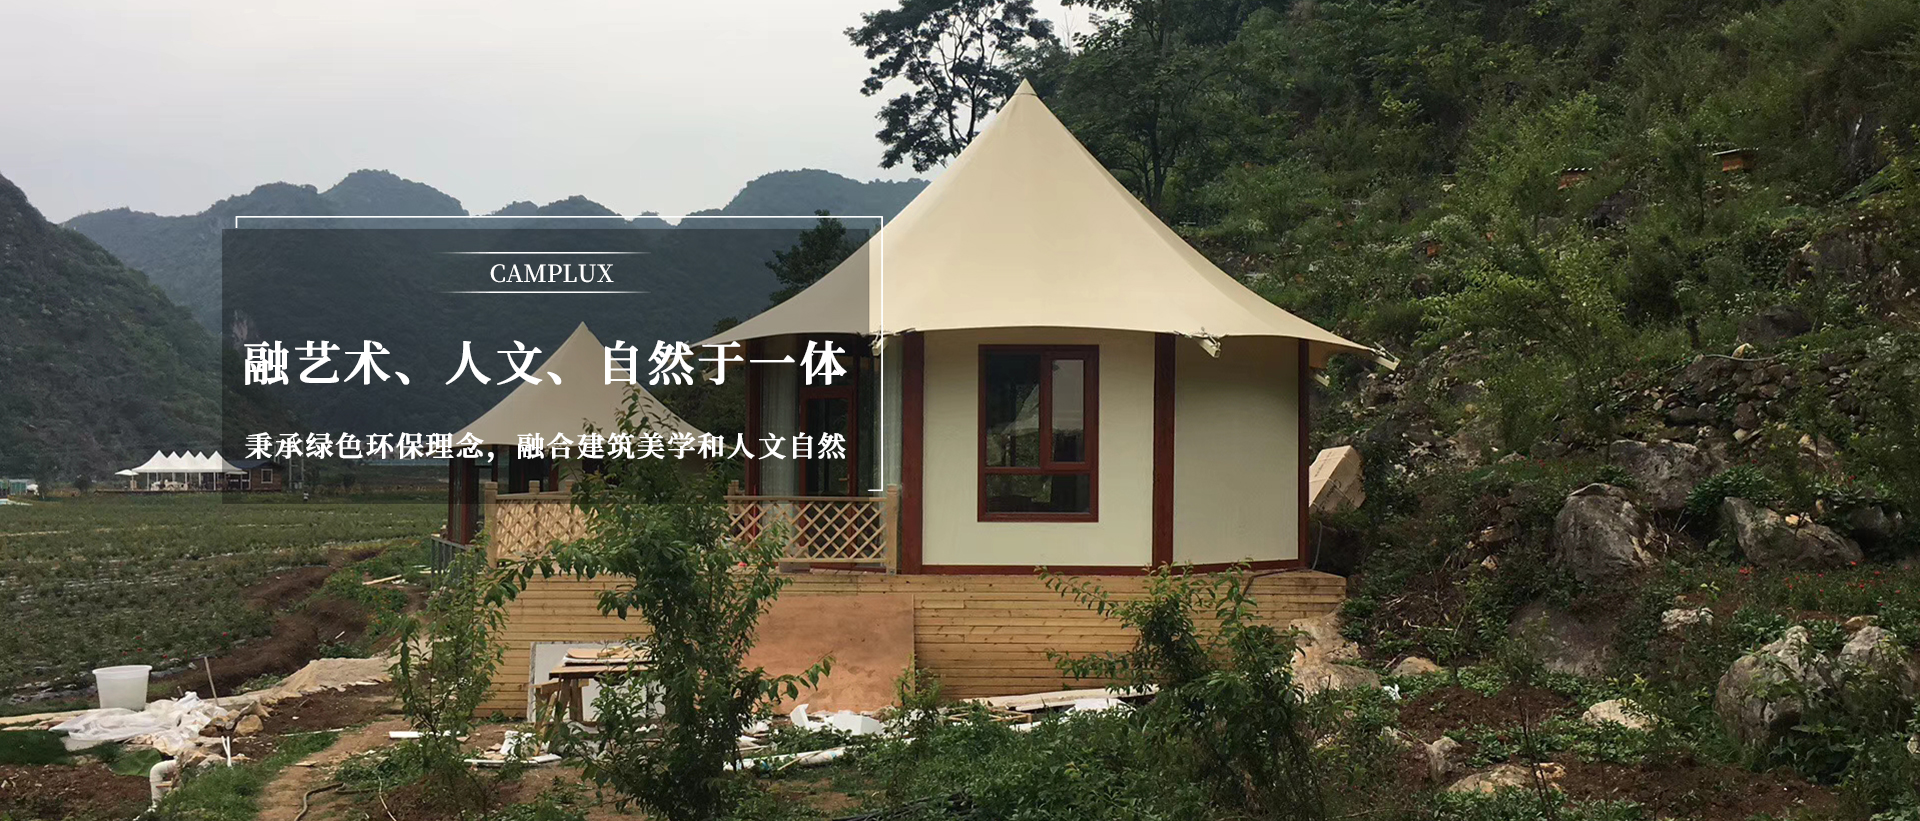 广州野奢帐篷